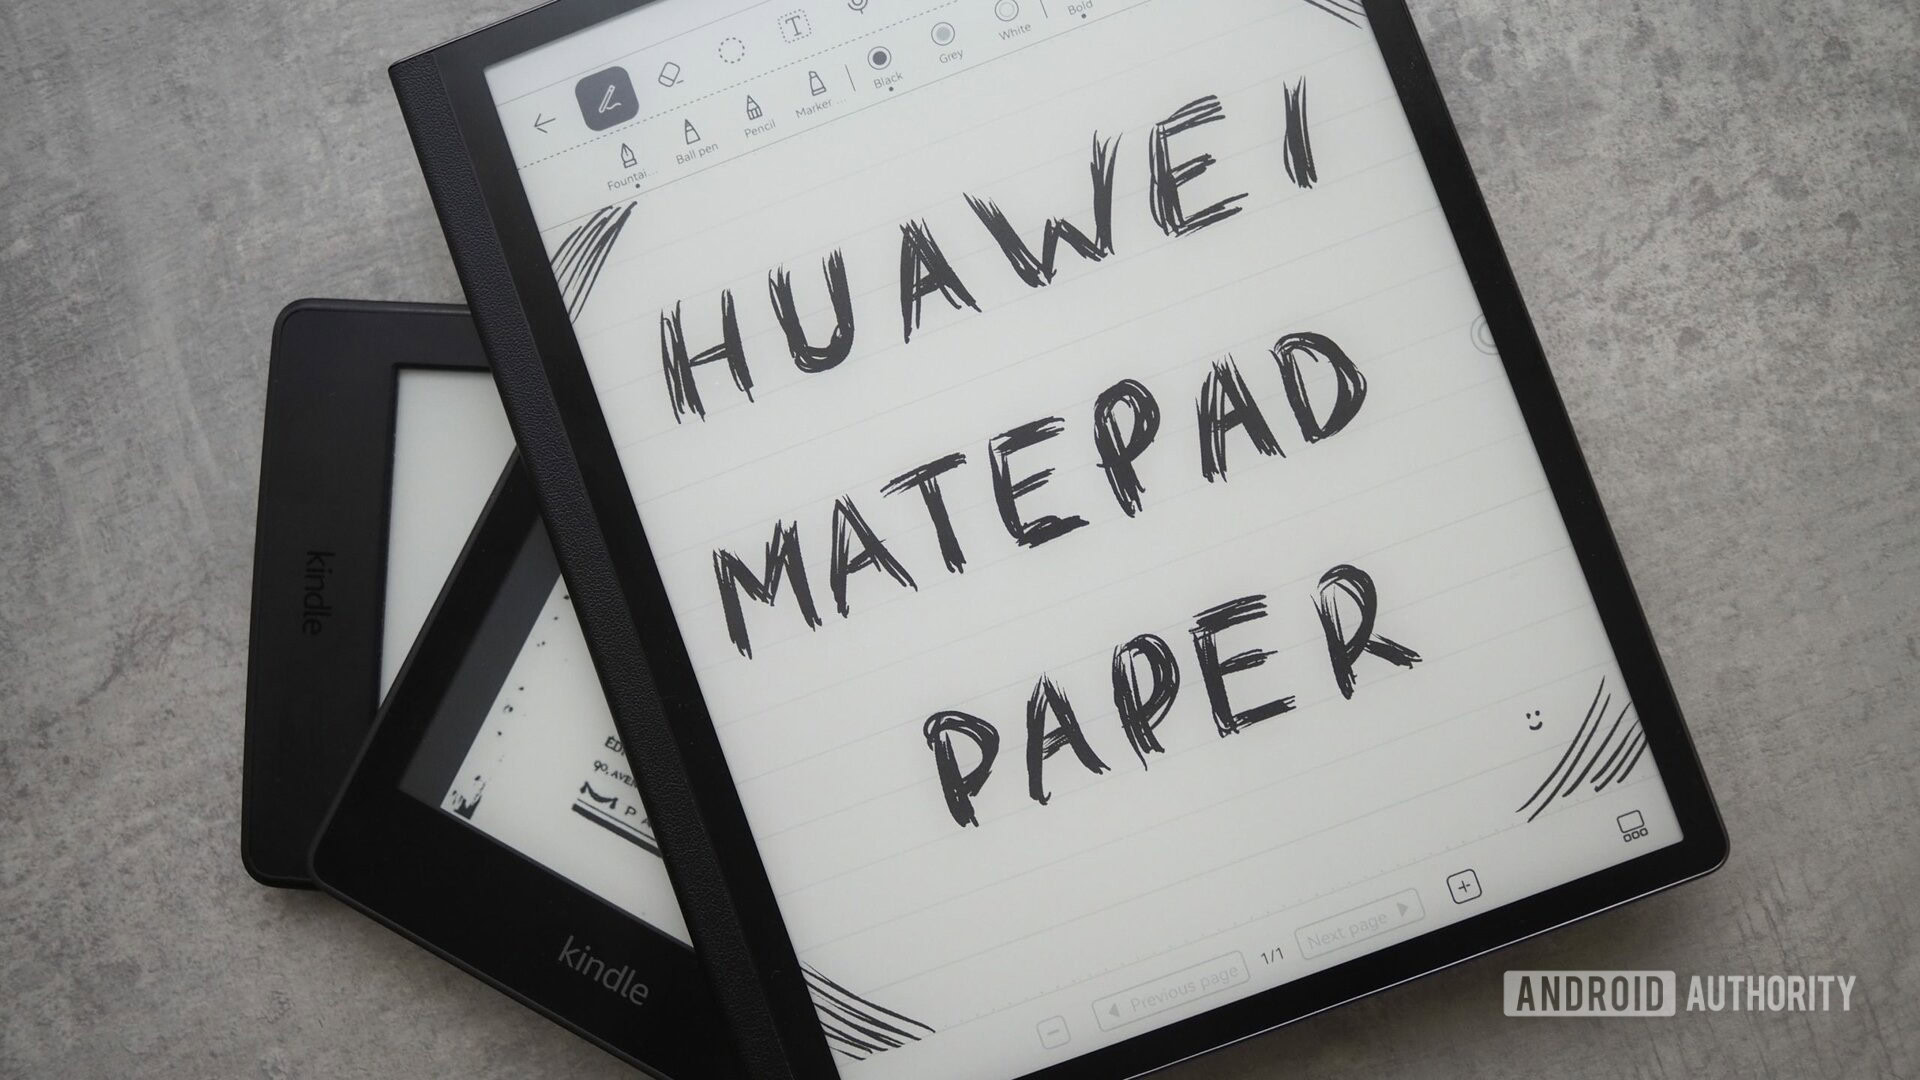 Bạn đang tìm kiếm một chiếc máy tính bảng cầm tay cho công việc và giải trí? Huawei Matepad Paper chính là lựa chọn hoàn hảo cho bạn! Dòng máy tính này có thể giúp bạn thỏa mãn khát khao đọc sách với tệp PDF rõ ràng, pin siêu tiết kiệm và độ mượt mà khi hoạt động - hãy xem ngay review này để biết thêm chi tiết!